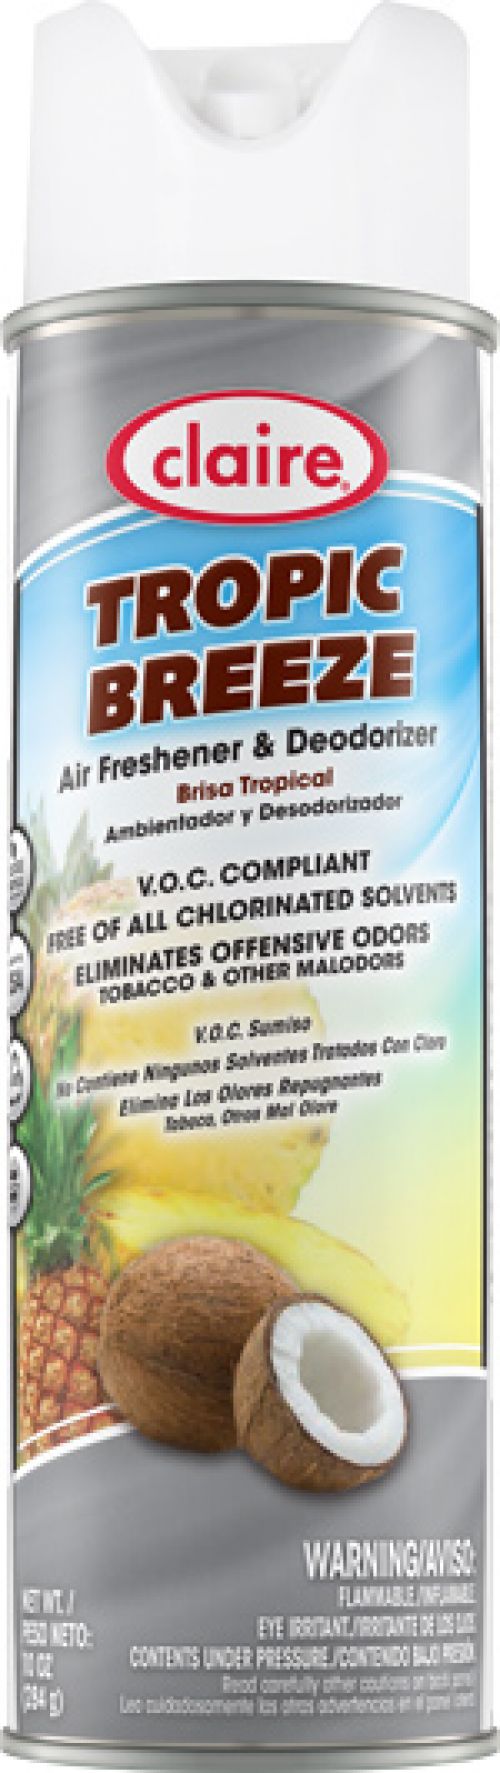 Air Freshener & Deodorizer Tropic